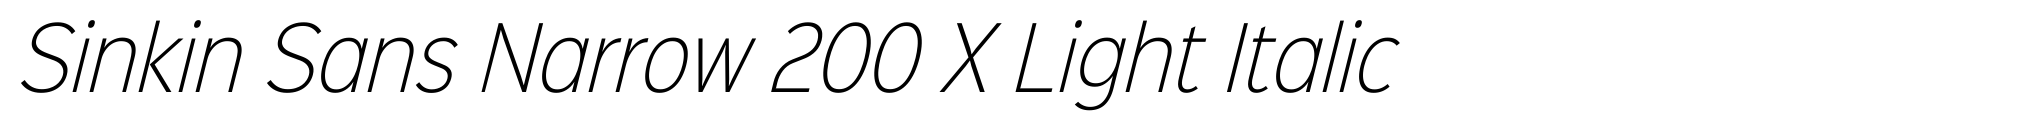 Sinkin Sans Narrow 200 X Light Italic image